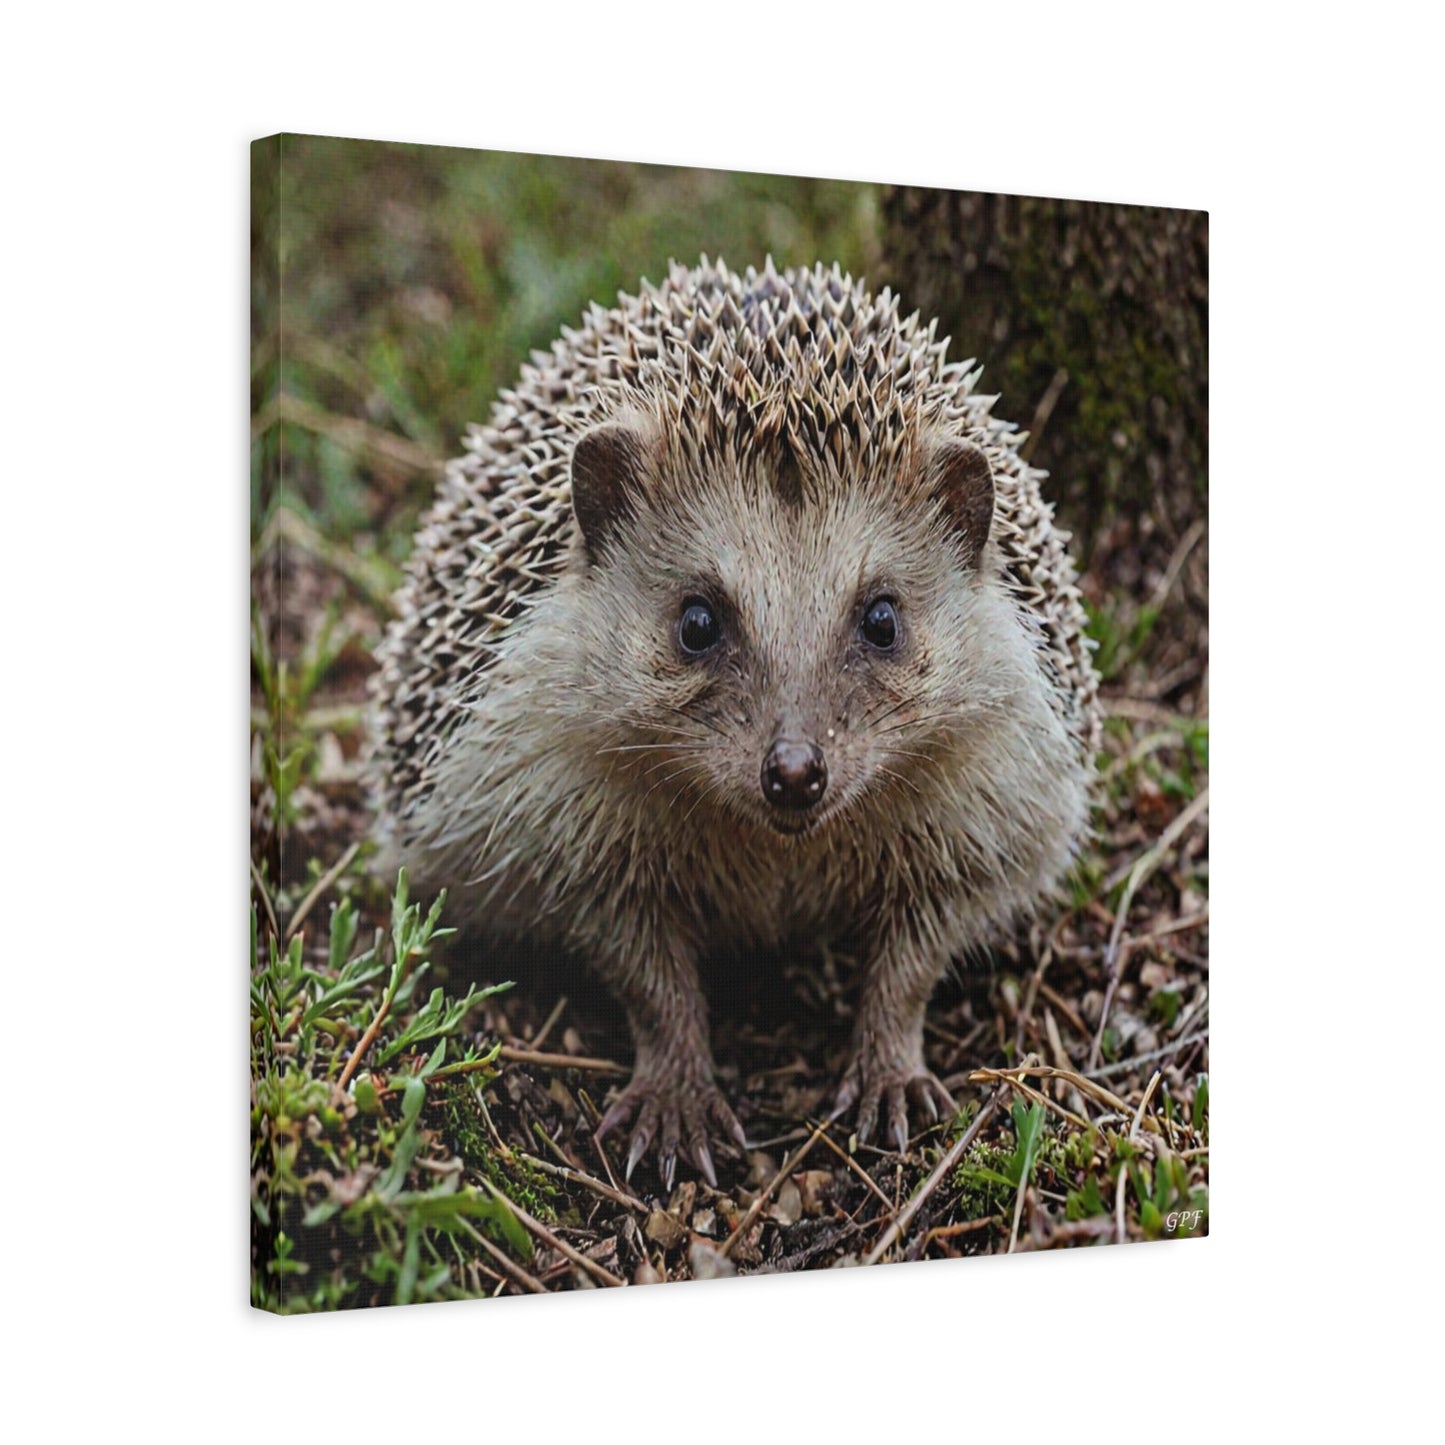 European Hedgehog (140)